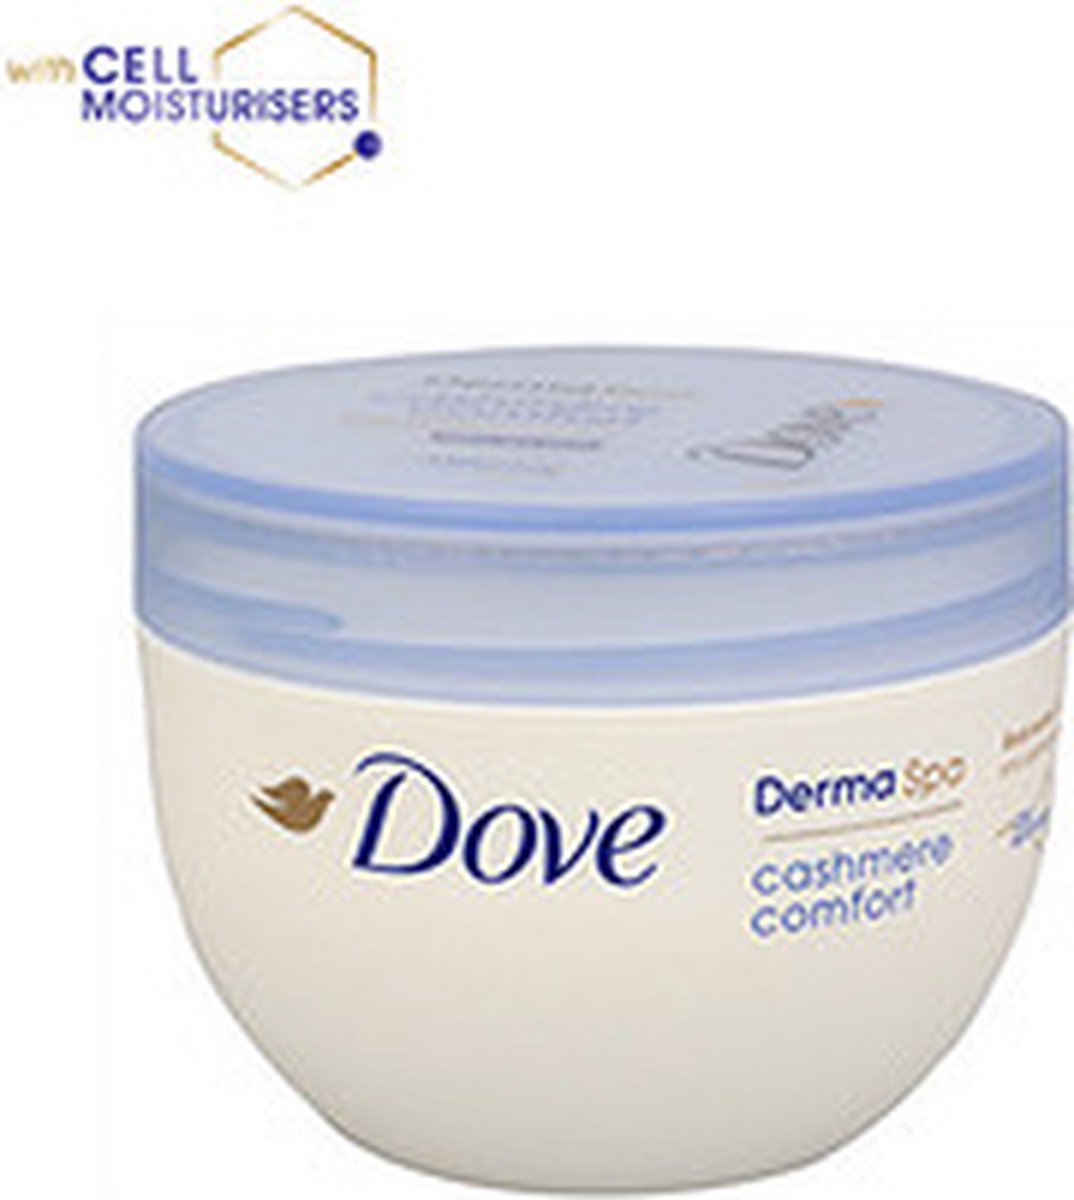 Dove DermaSpa Cashmere Comfort - 200 ml - Bodylotion - Dove